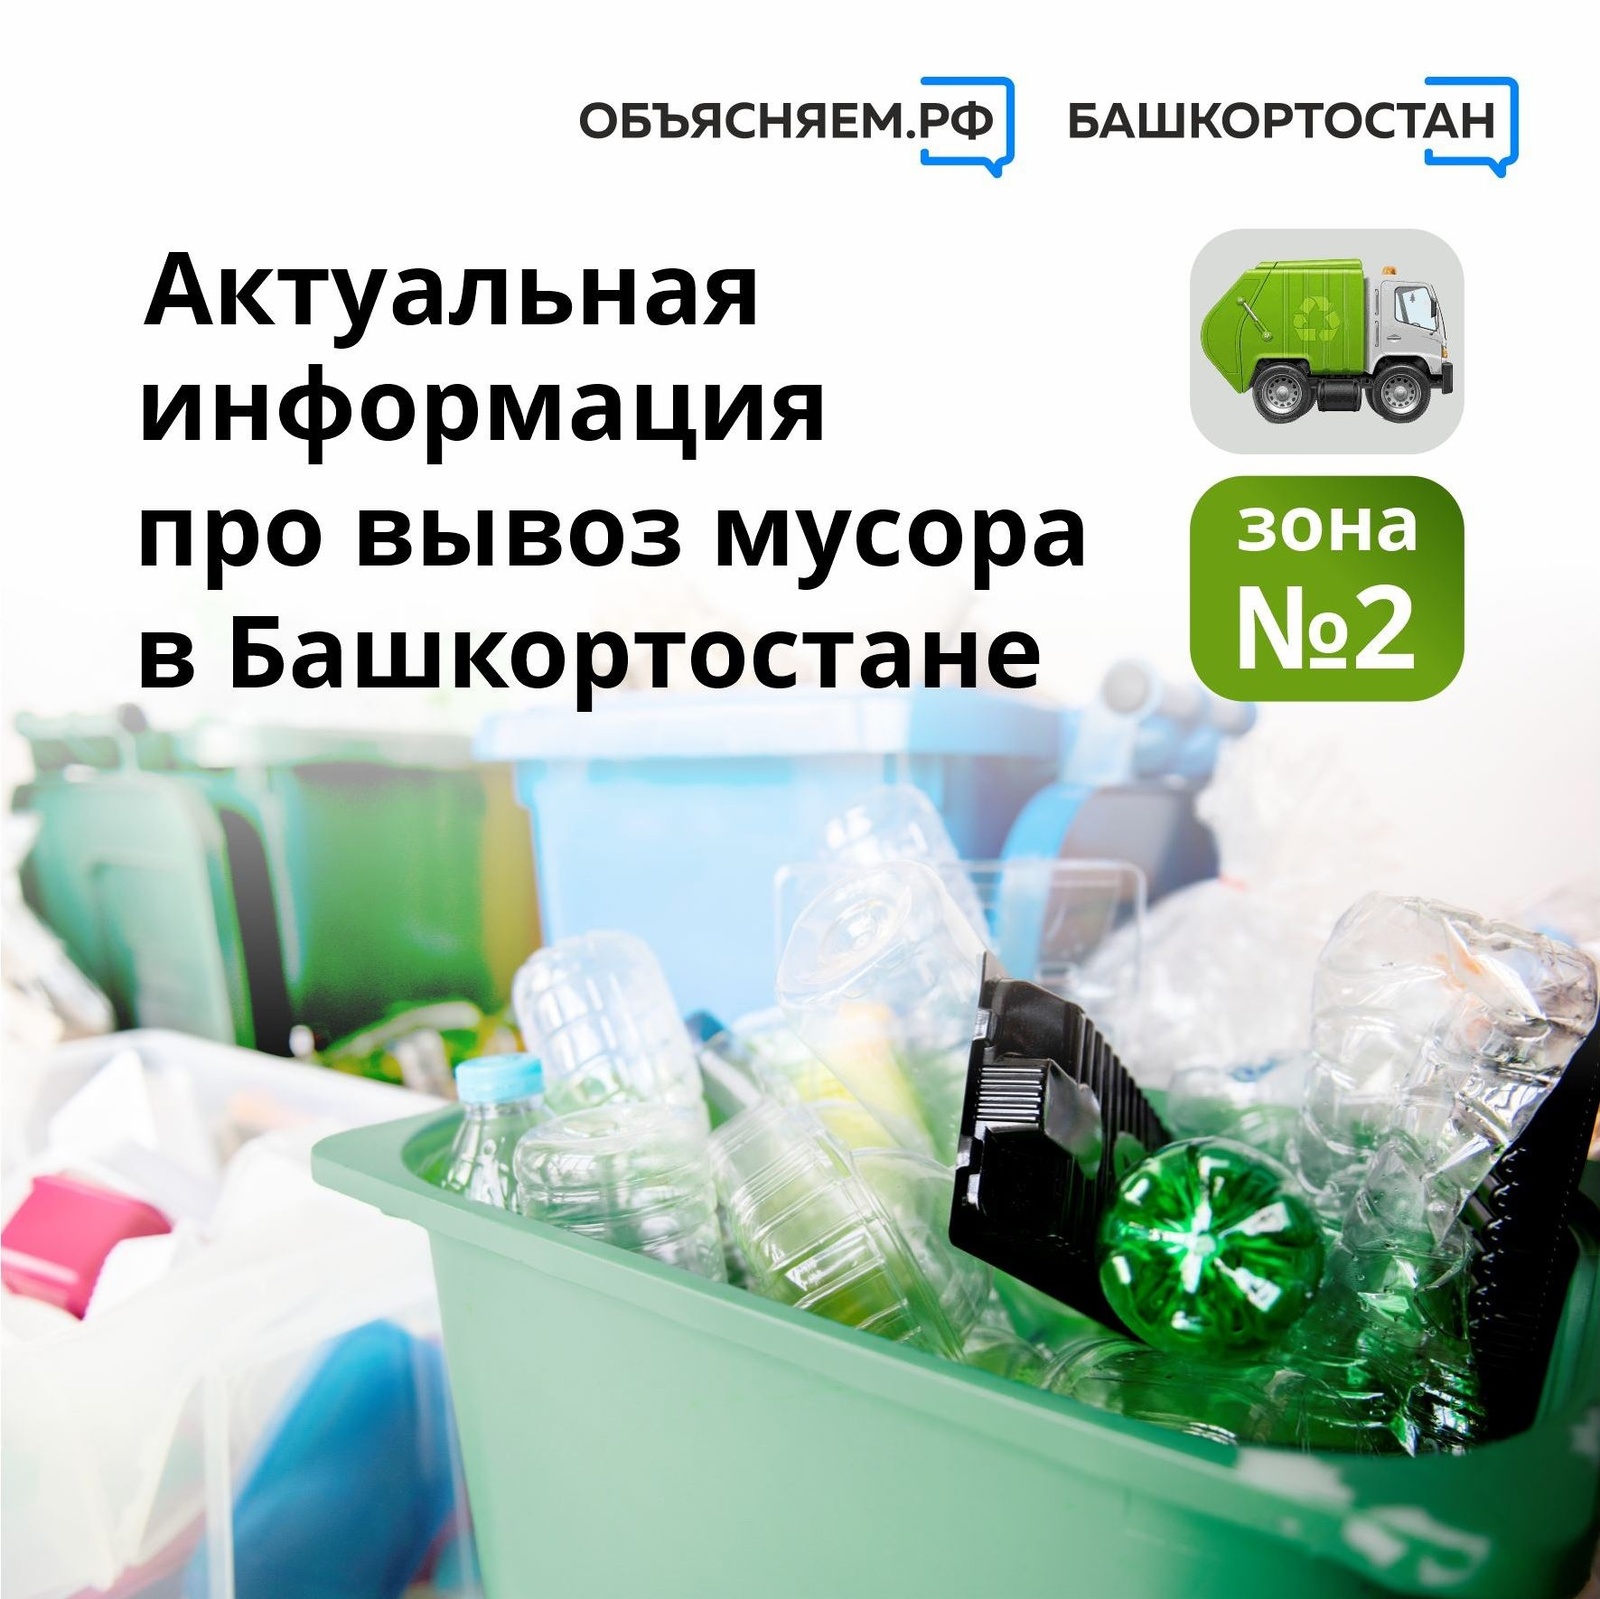 Актуальная информация про вывоз мусора в Башкортостане в зоне №2